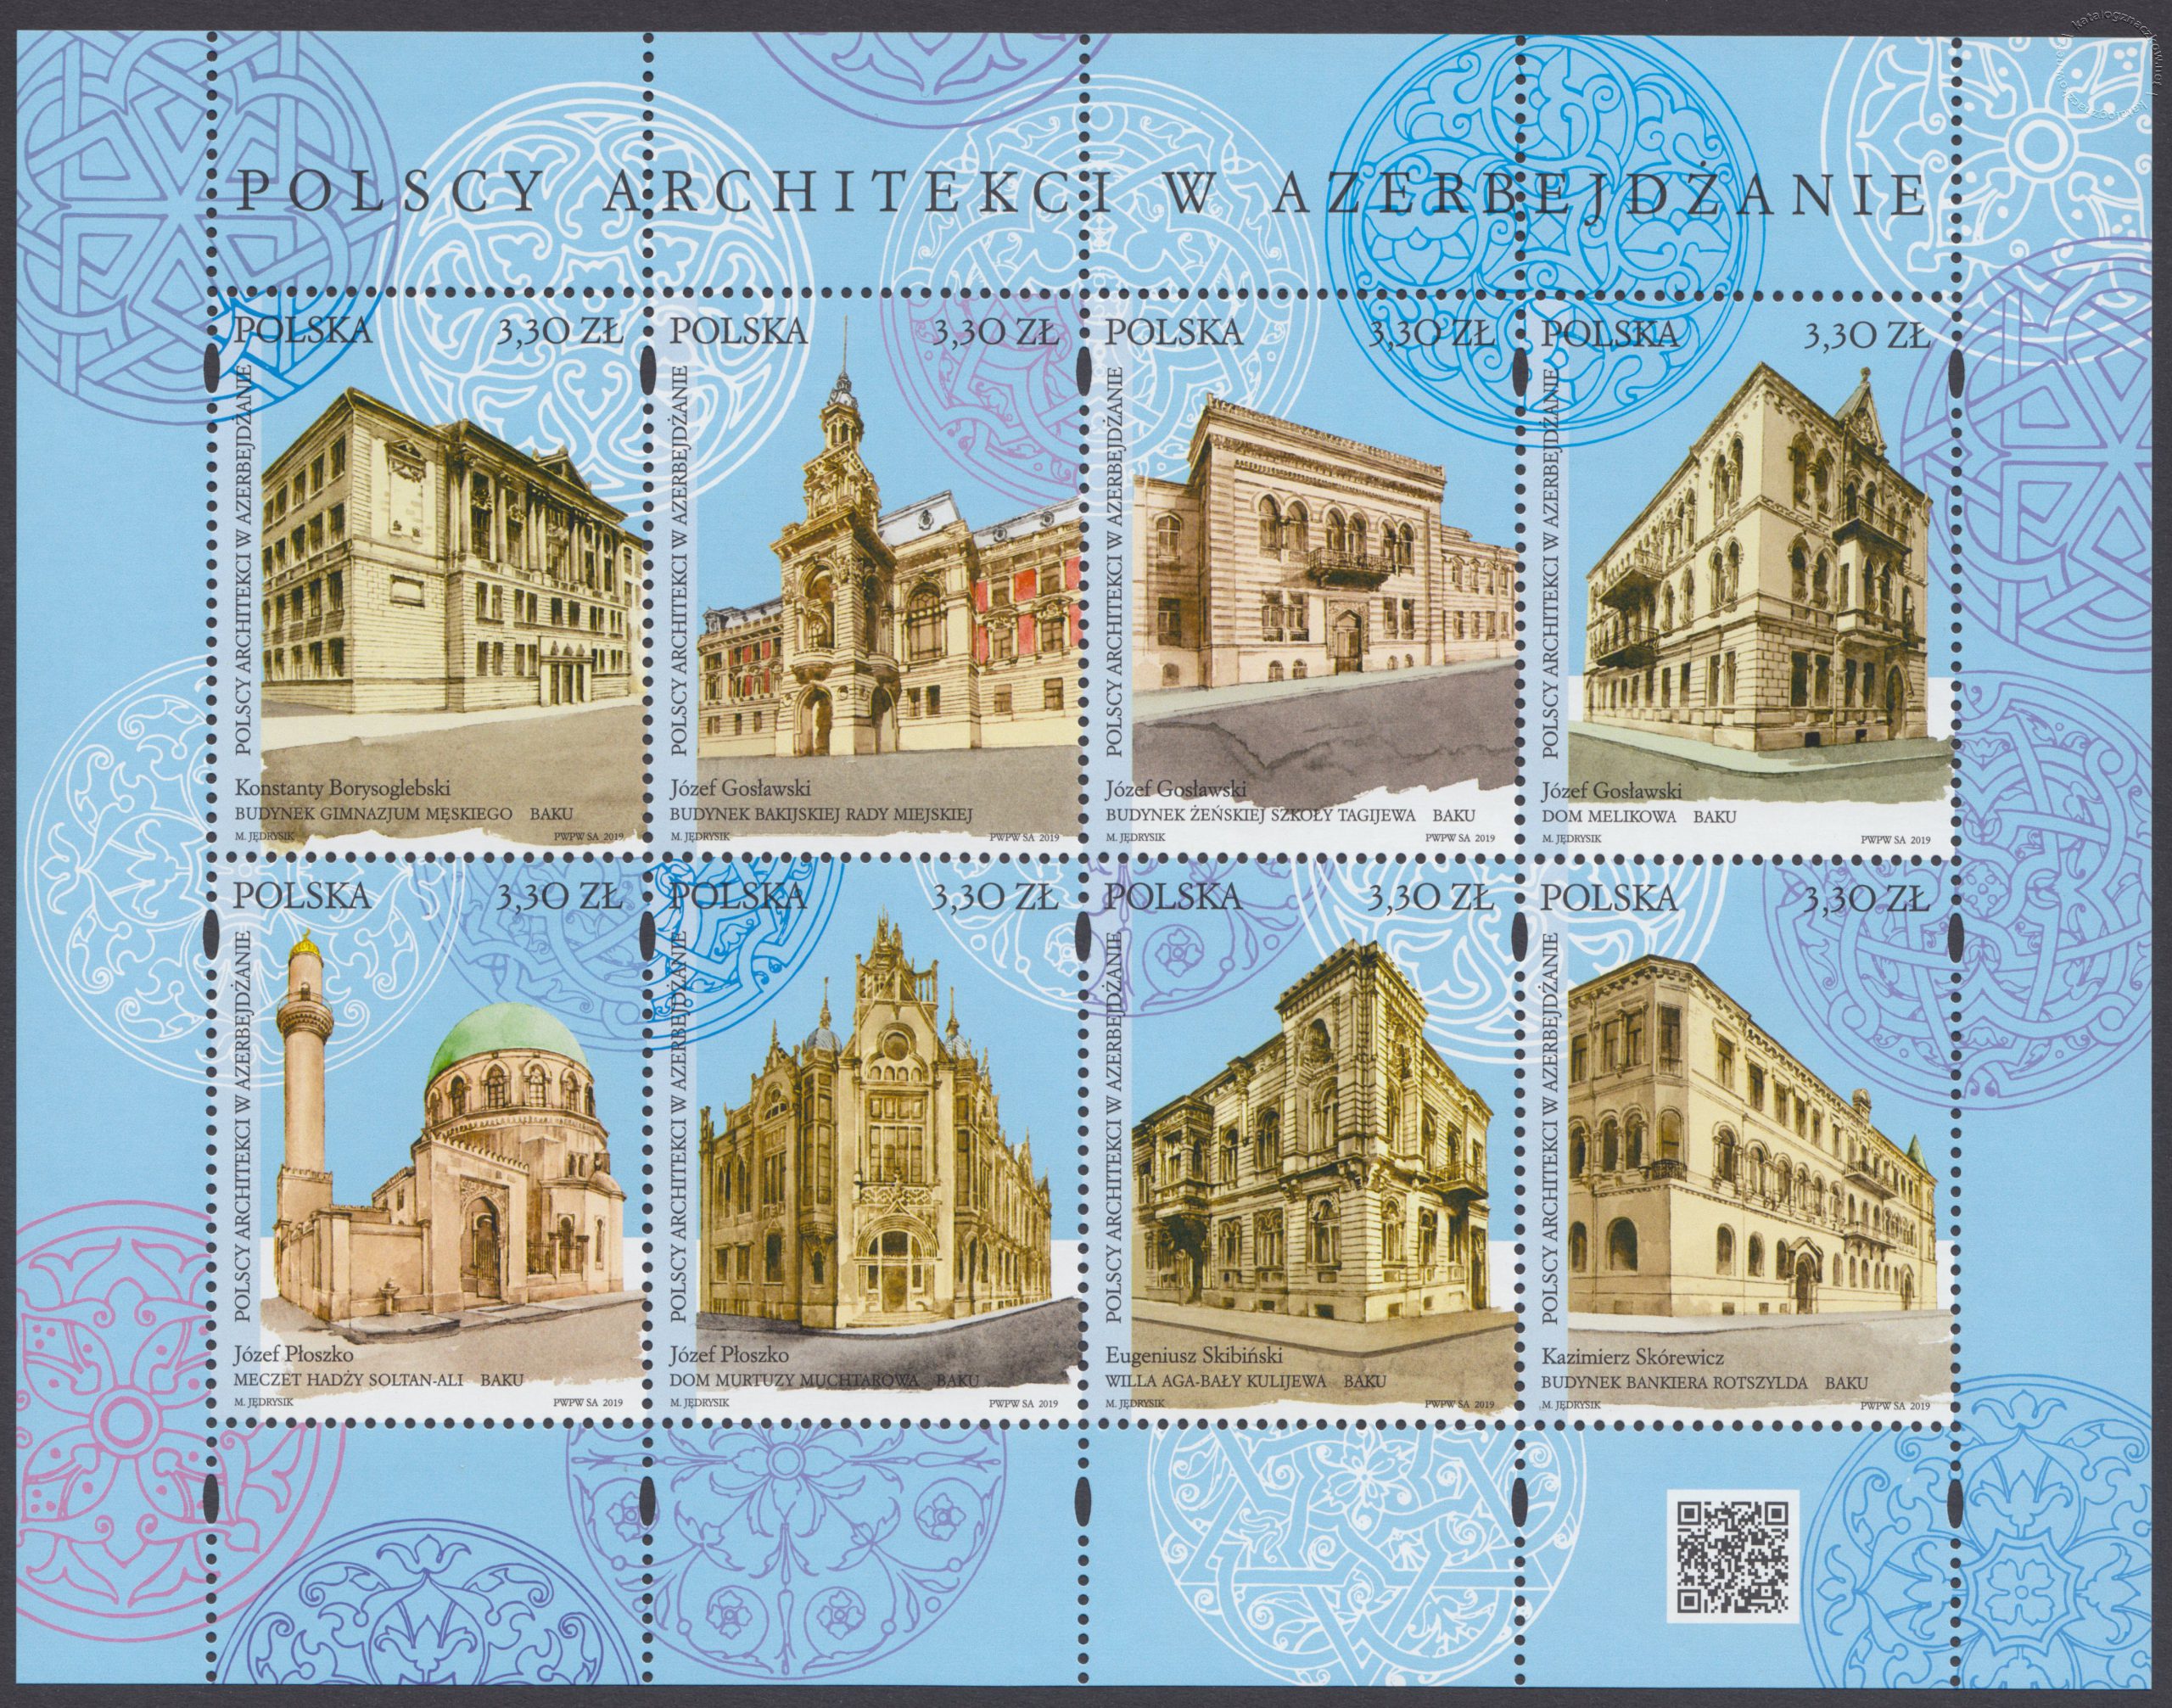 Polscy architekci w Azerbejdżanie – Blok 216